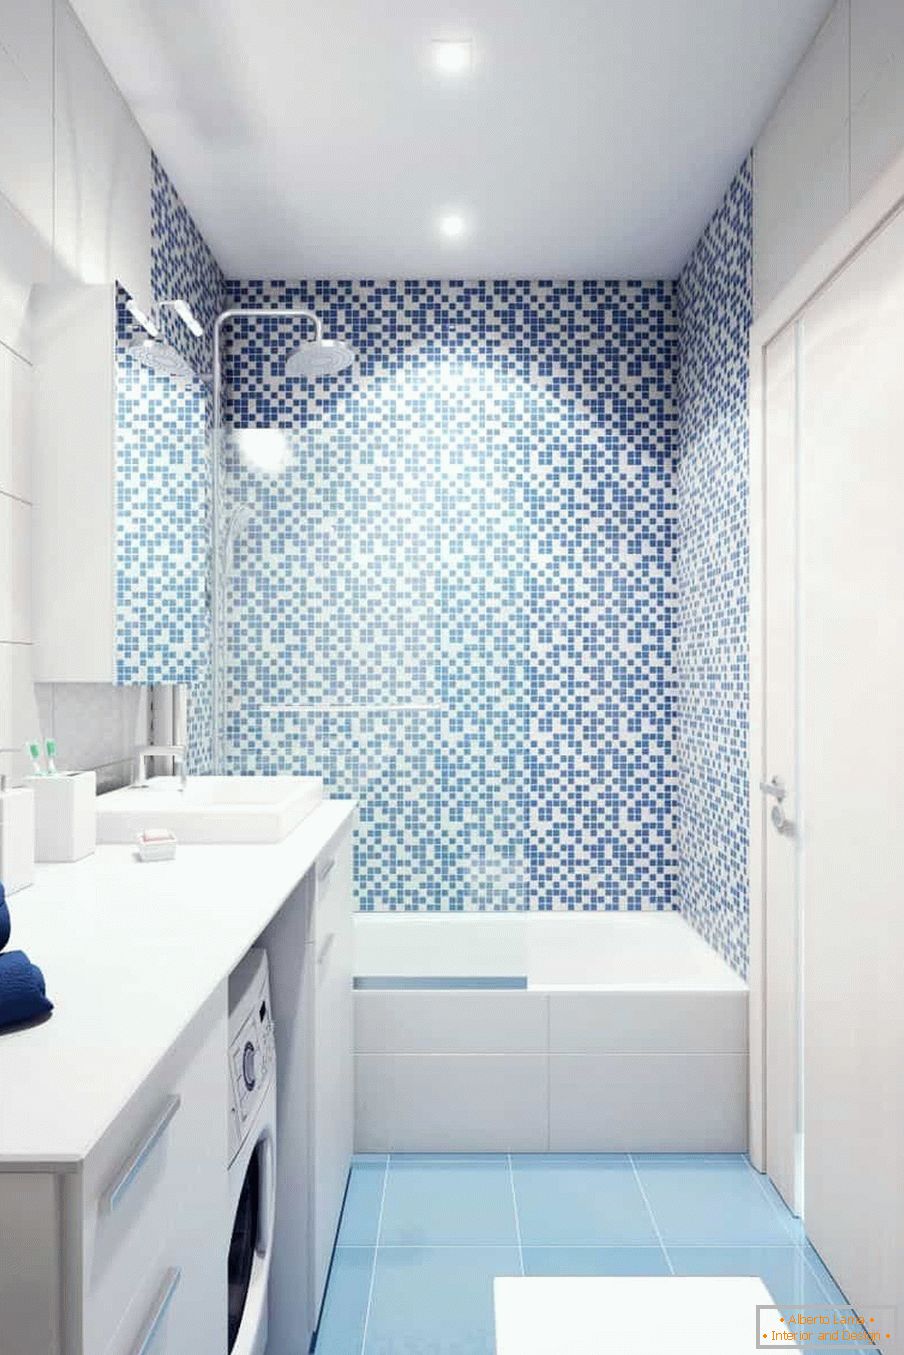 Salle de bain blanc-bleu dans la maison de panneau